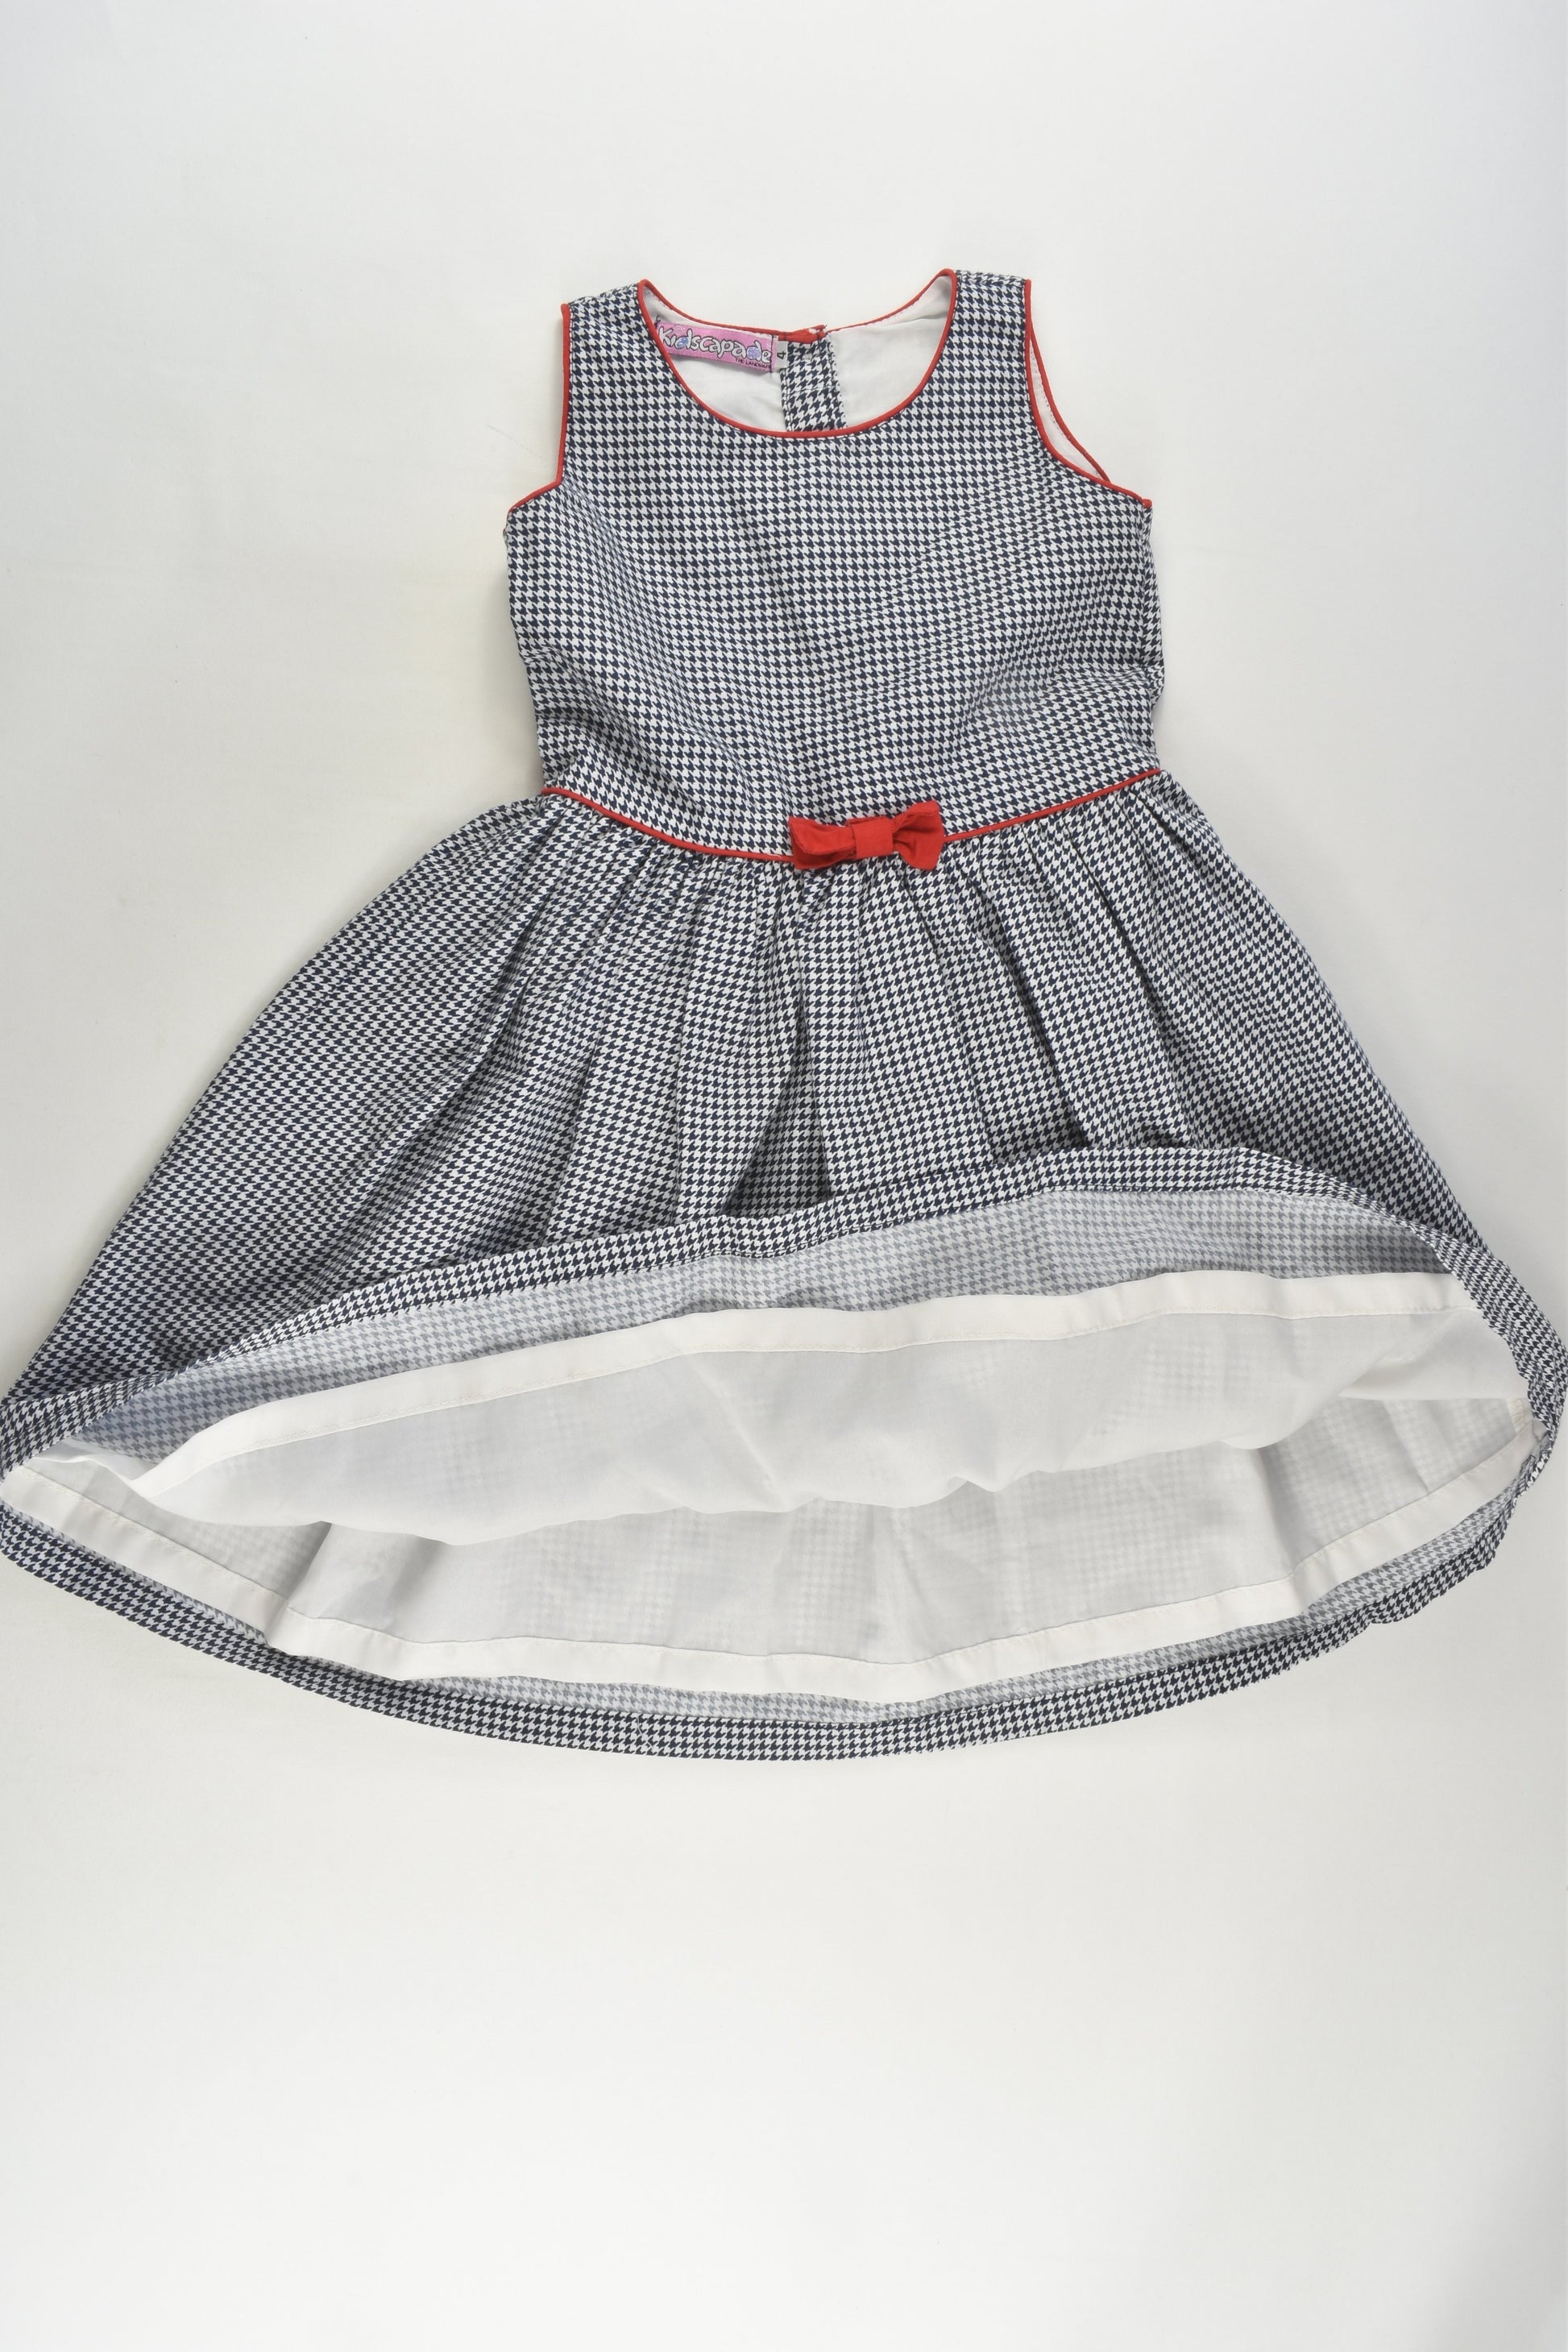 Kidscapade Size 4 Lined Dress